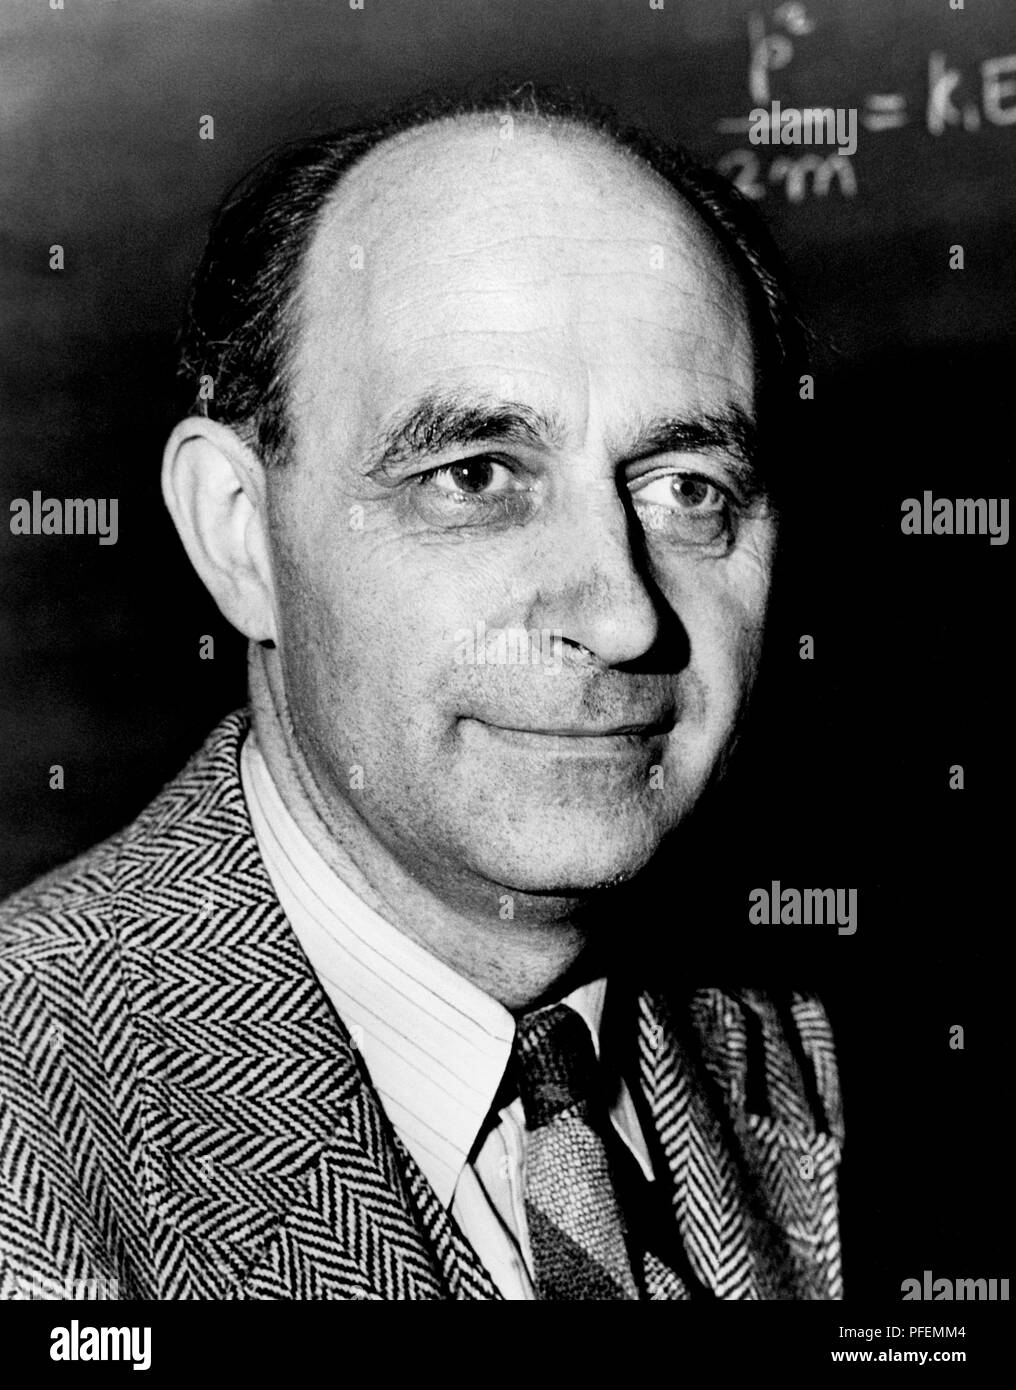 Enrico Fermi (1901-1954) war ein italienischer und Naturalisiert - amerikanische Physiker, der erste Atomreaktor der Welt erstellt, die Chicago Pile-1 und hat das "Architekt des nuklearen Zeitalters" und der "Architekt der Atombombe" genannt wurde. Stockfoto